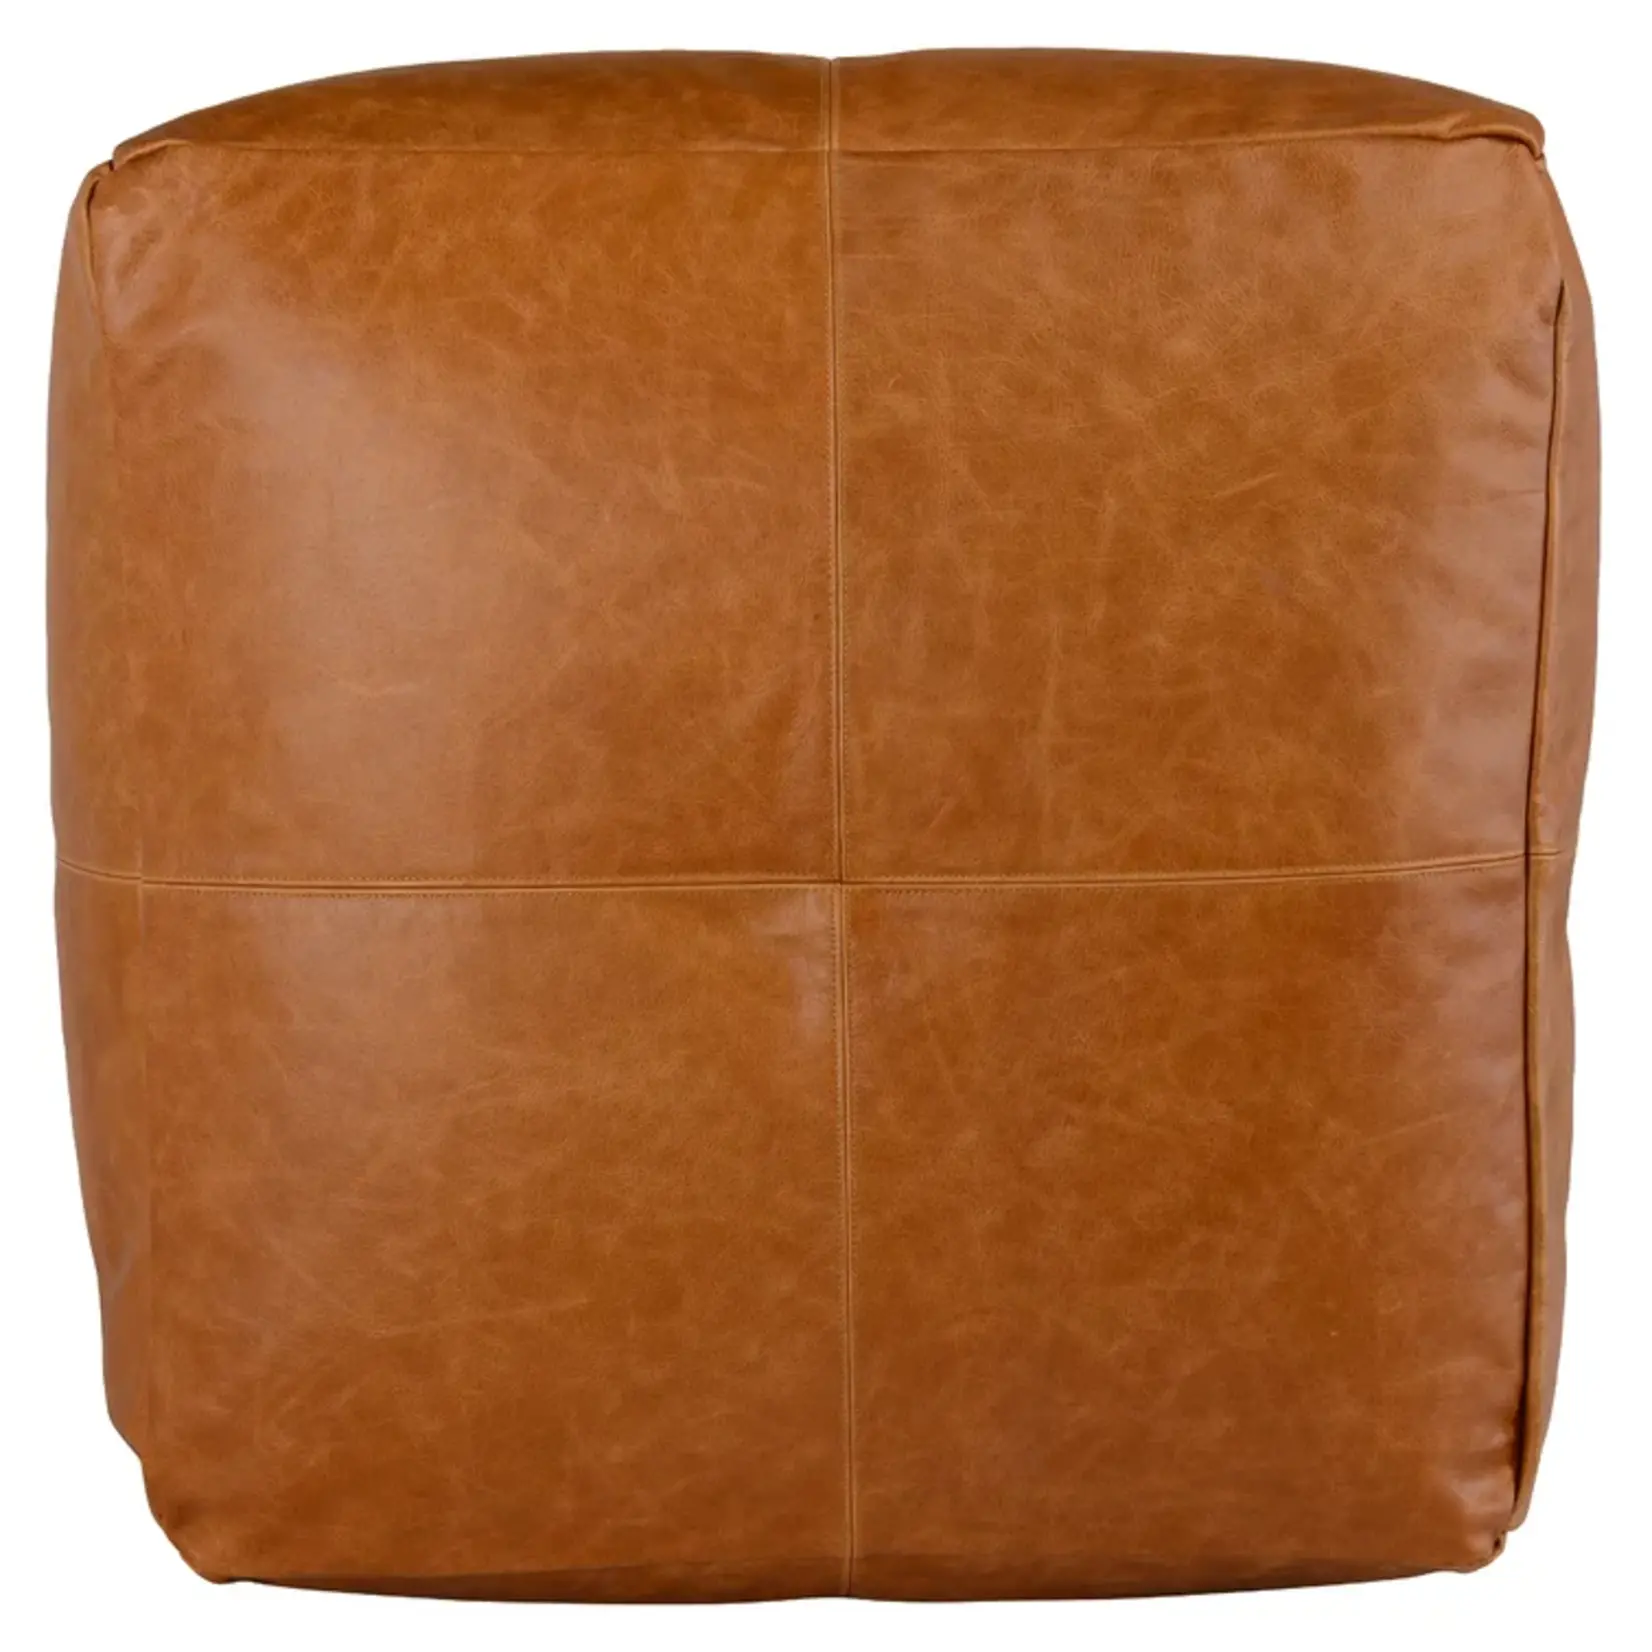 Nova Birch Lane Cutler Leather Pouf